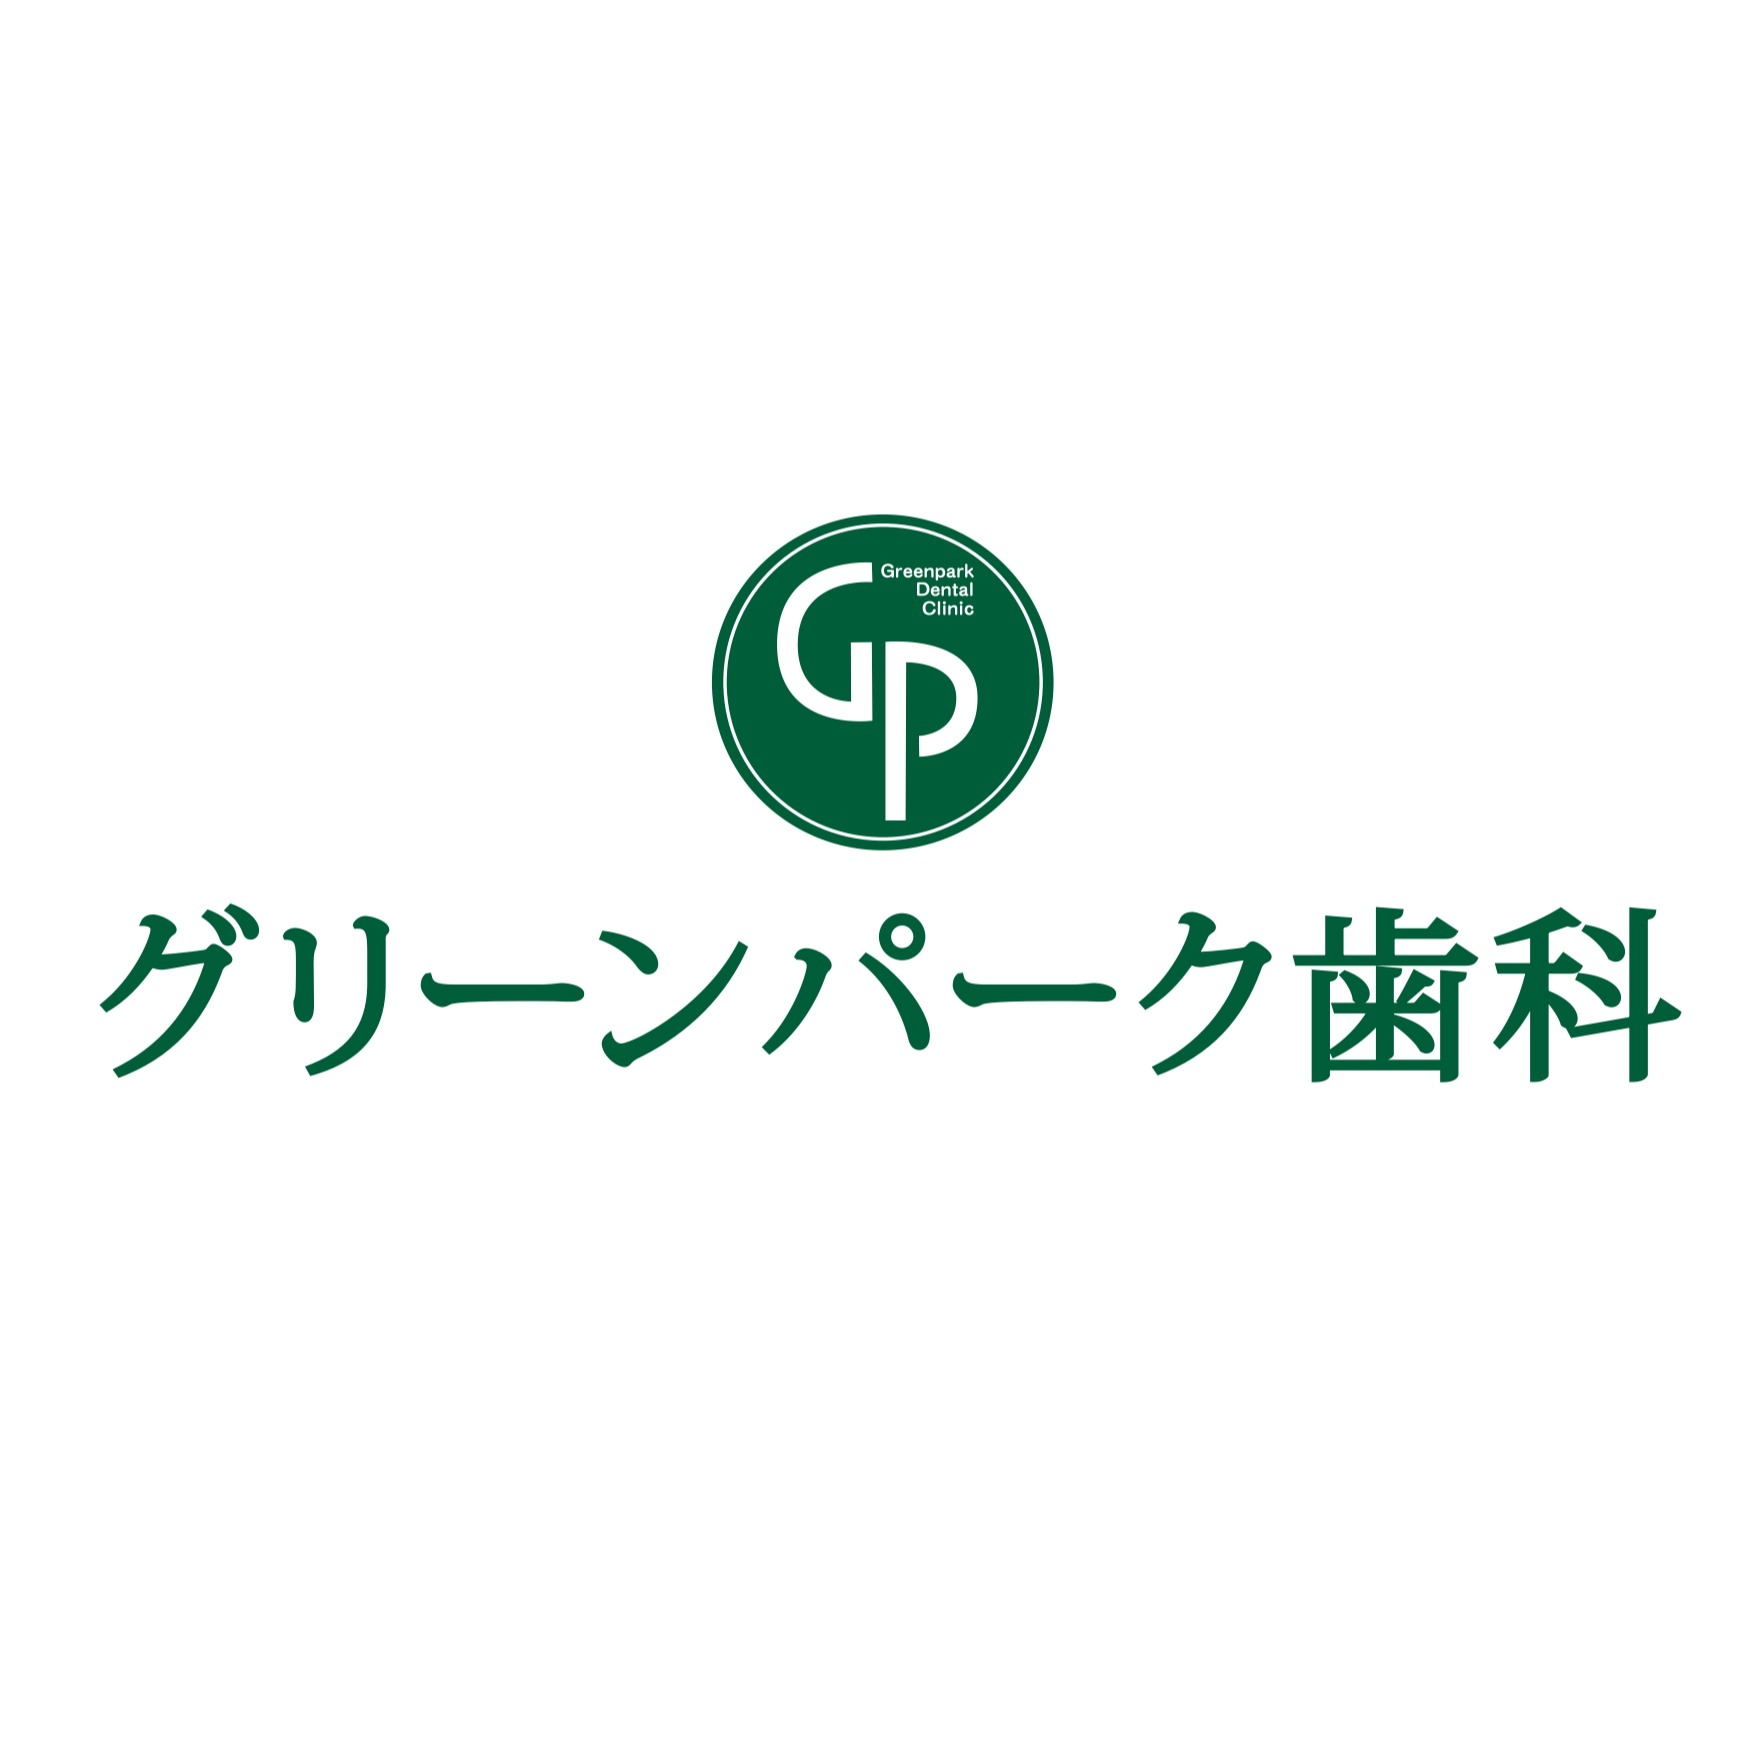 医療法人松翠会 グリーンパーク歯科 Logo